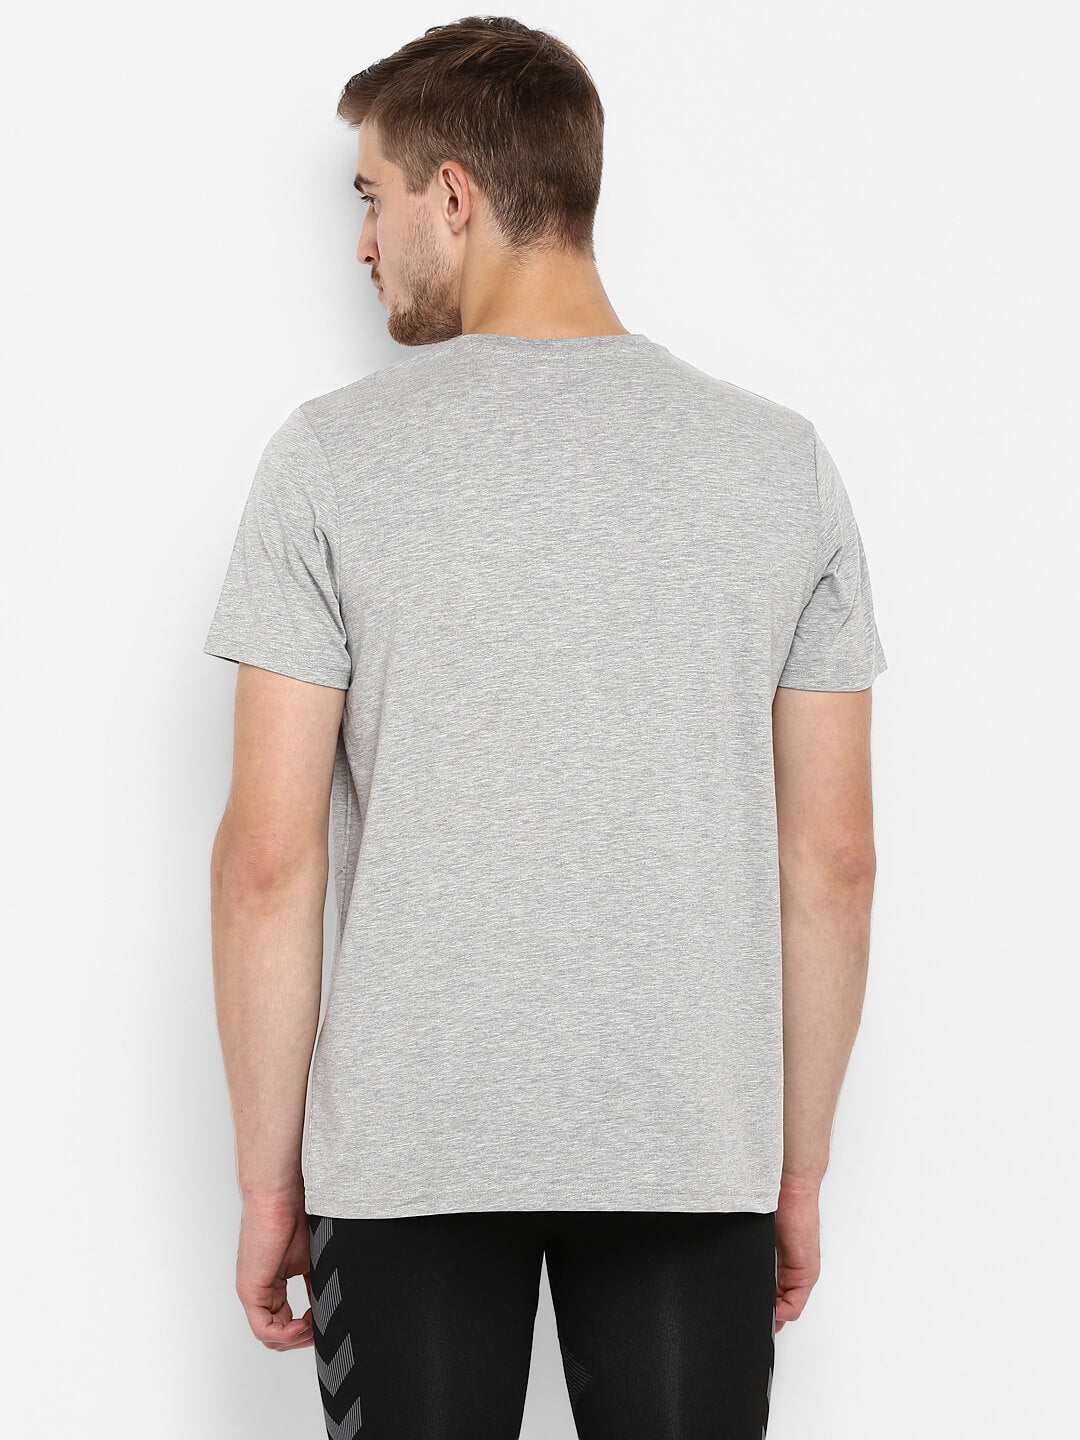 Jaxon Grey T-Shirts for Men